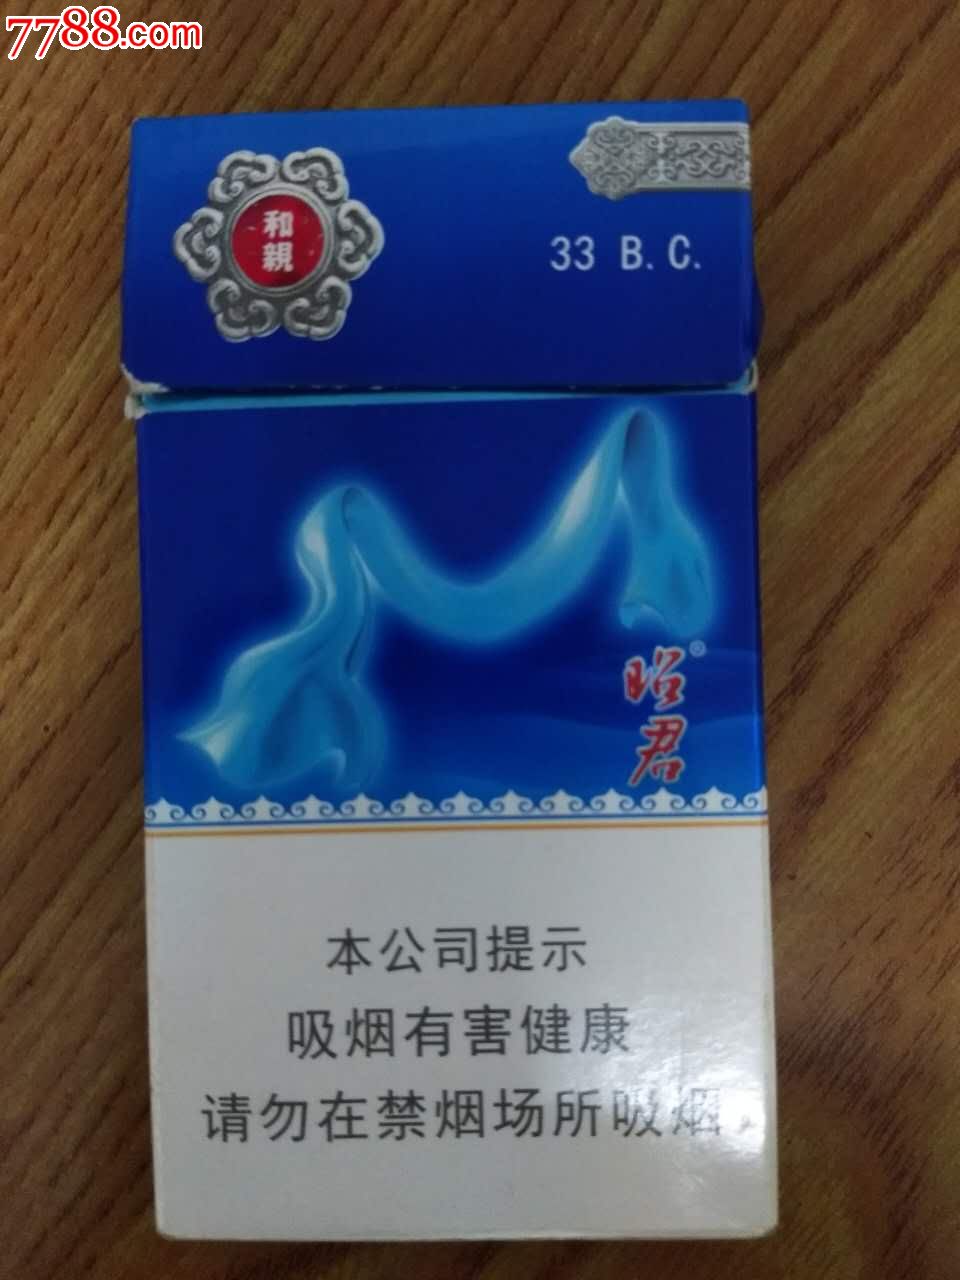 昭君新版非卖品1个_烟标/烟盒_情系烟缘【7788收藏